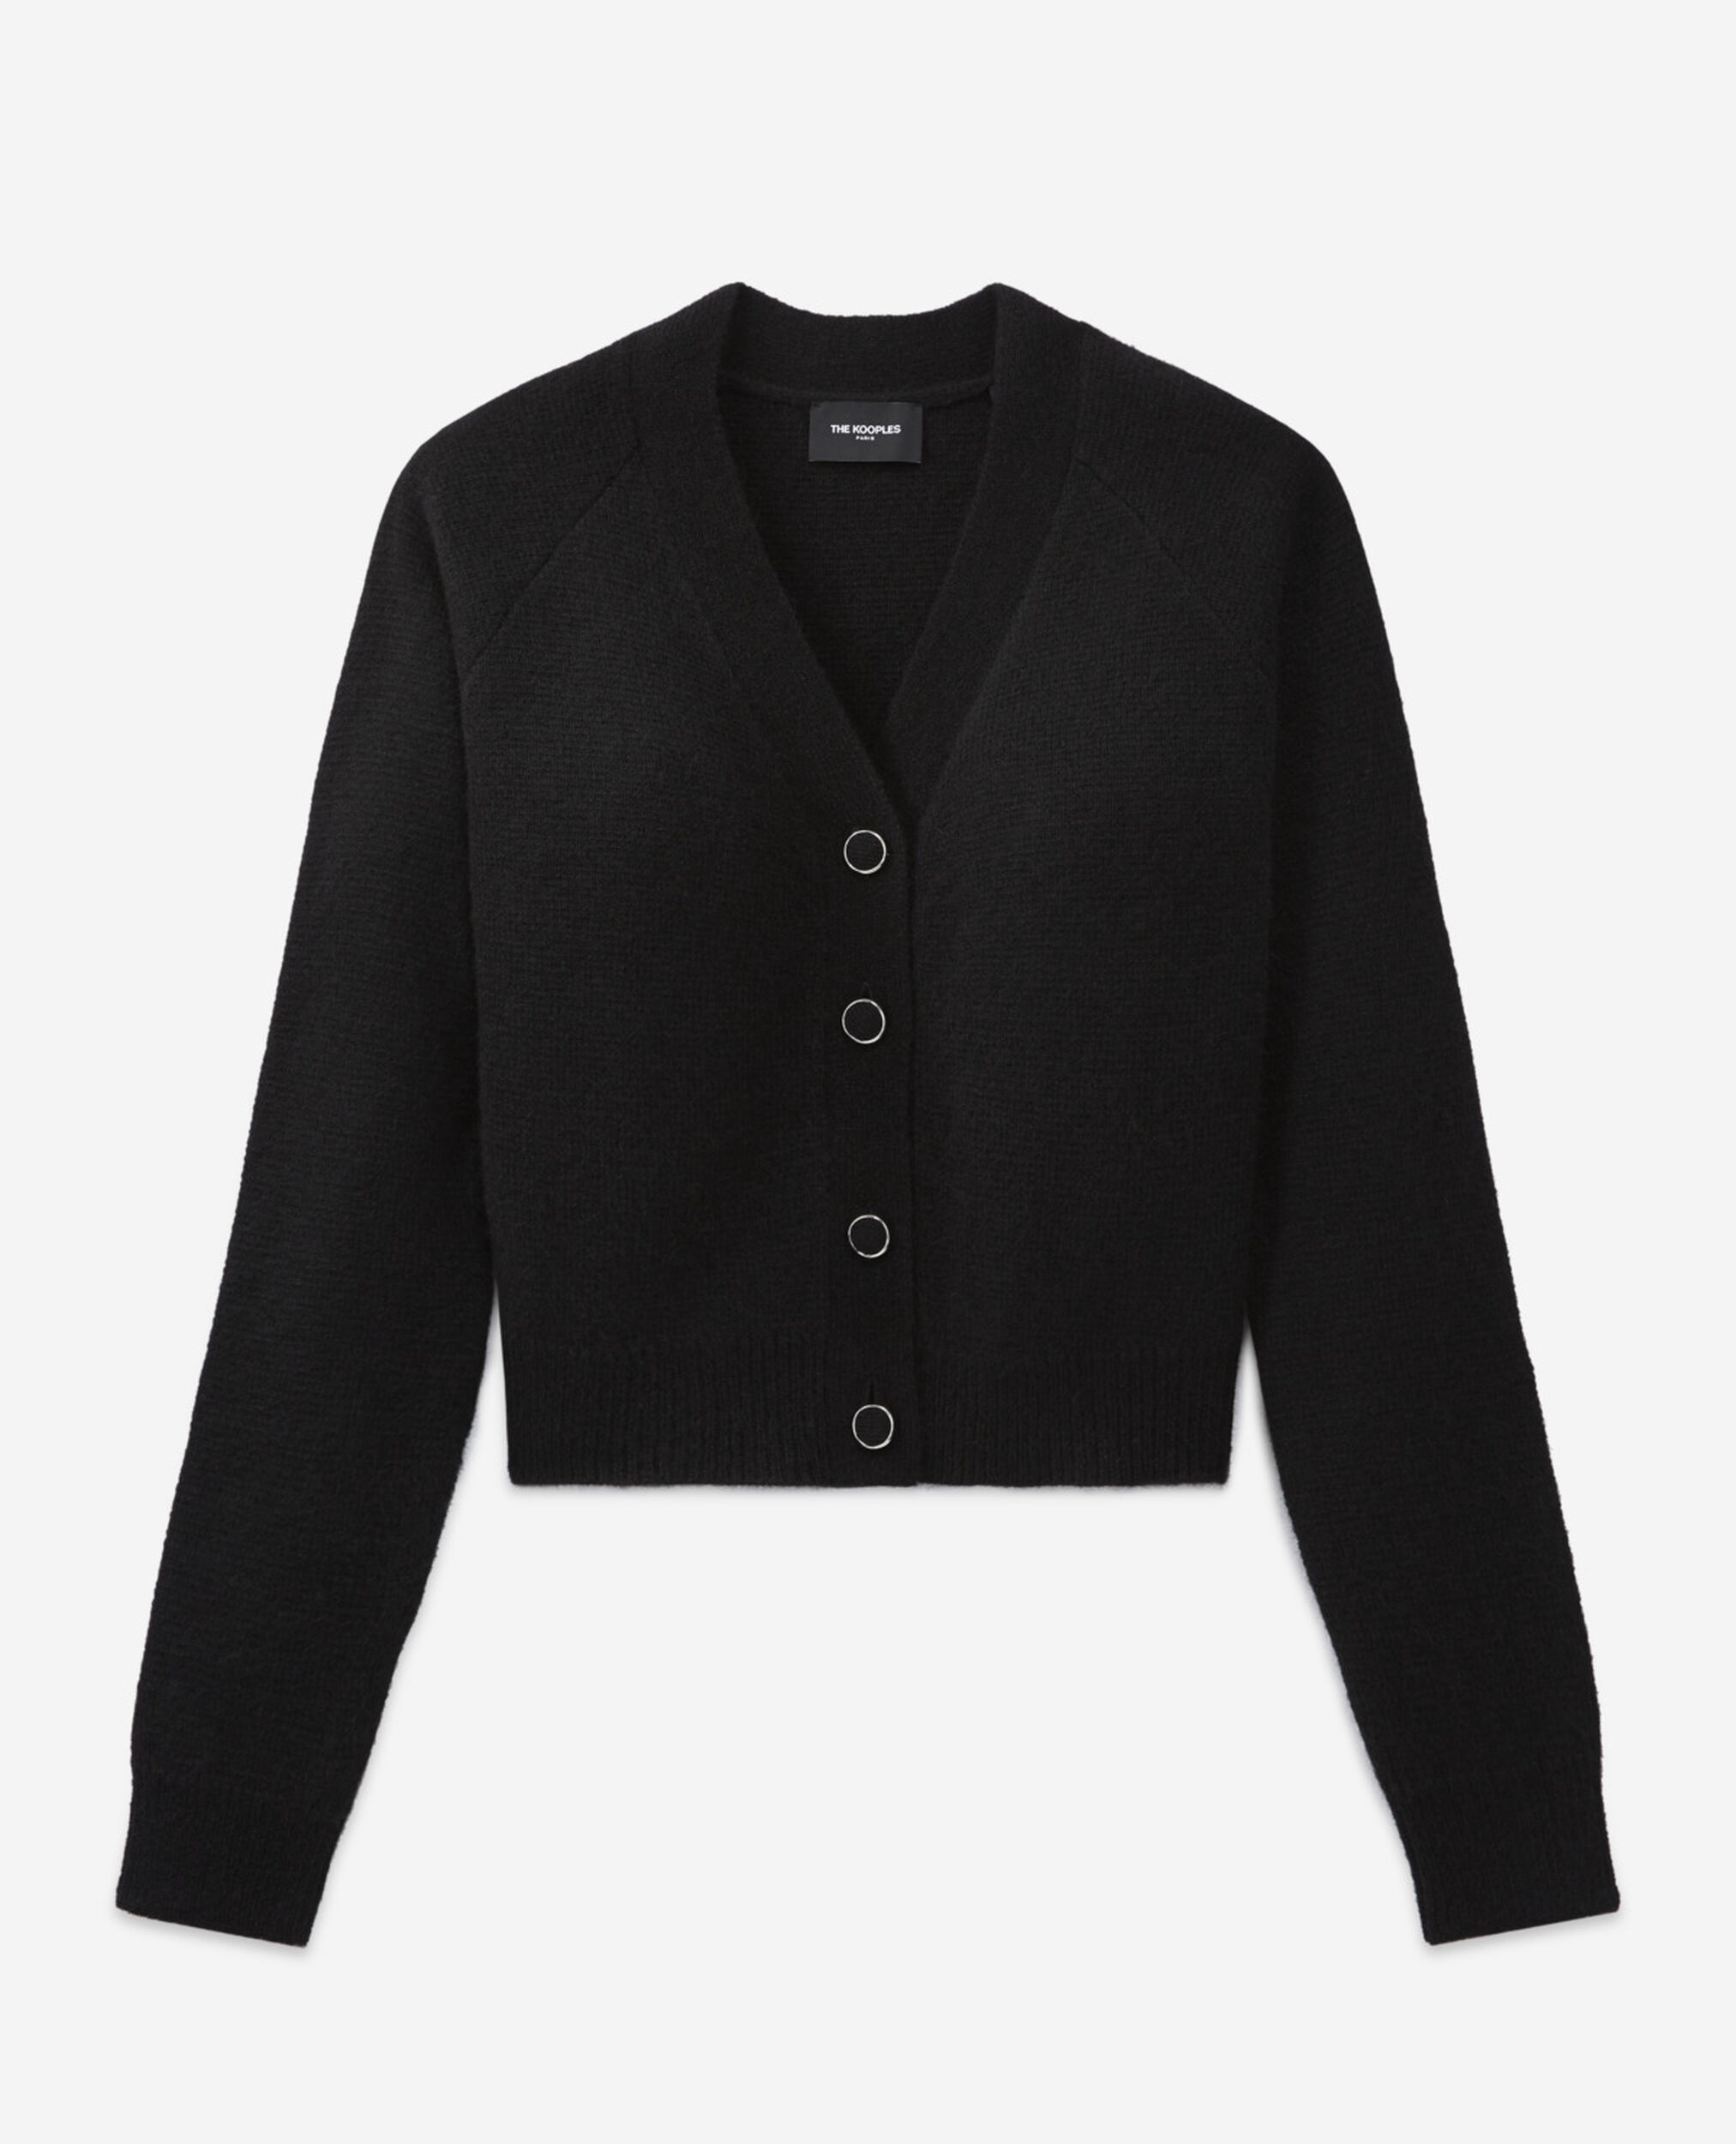 Cardigan laine alpaga noire boutonné, BLACK, hi-res image number null